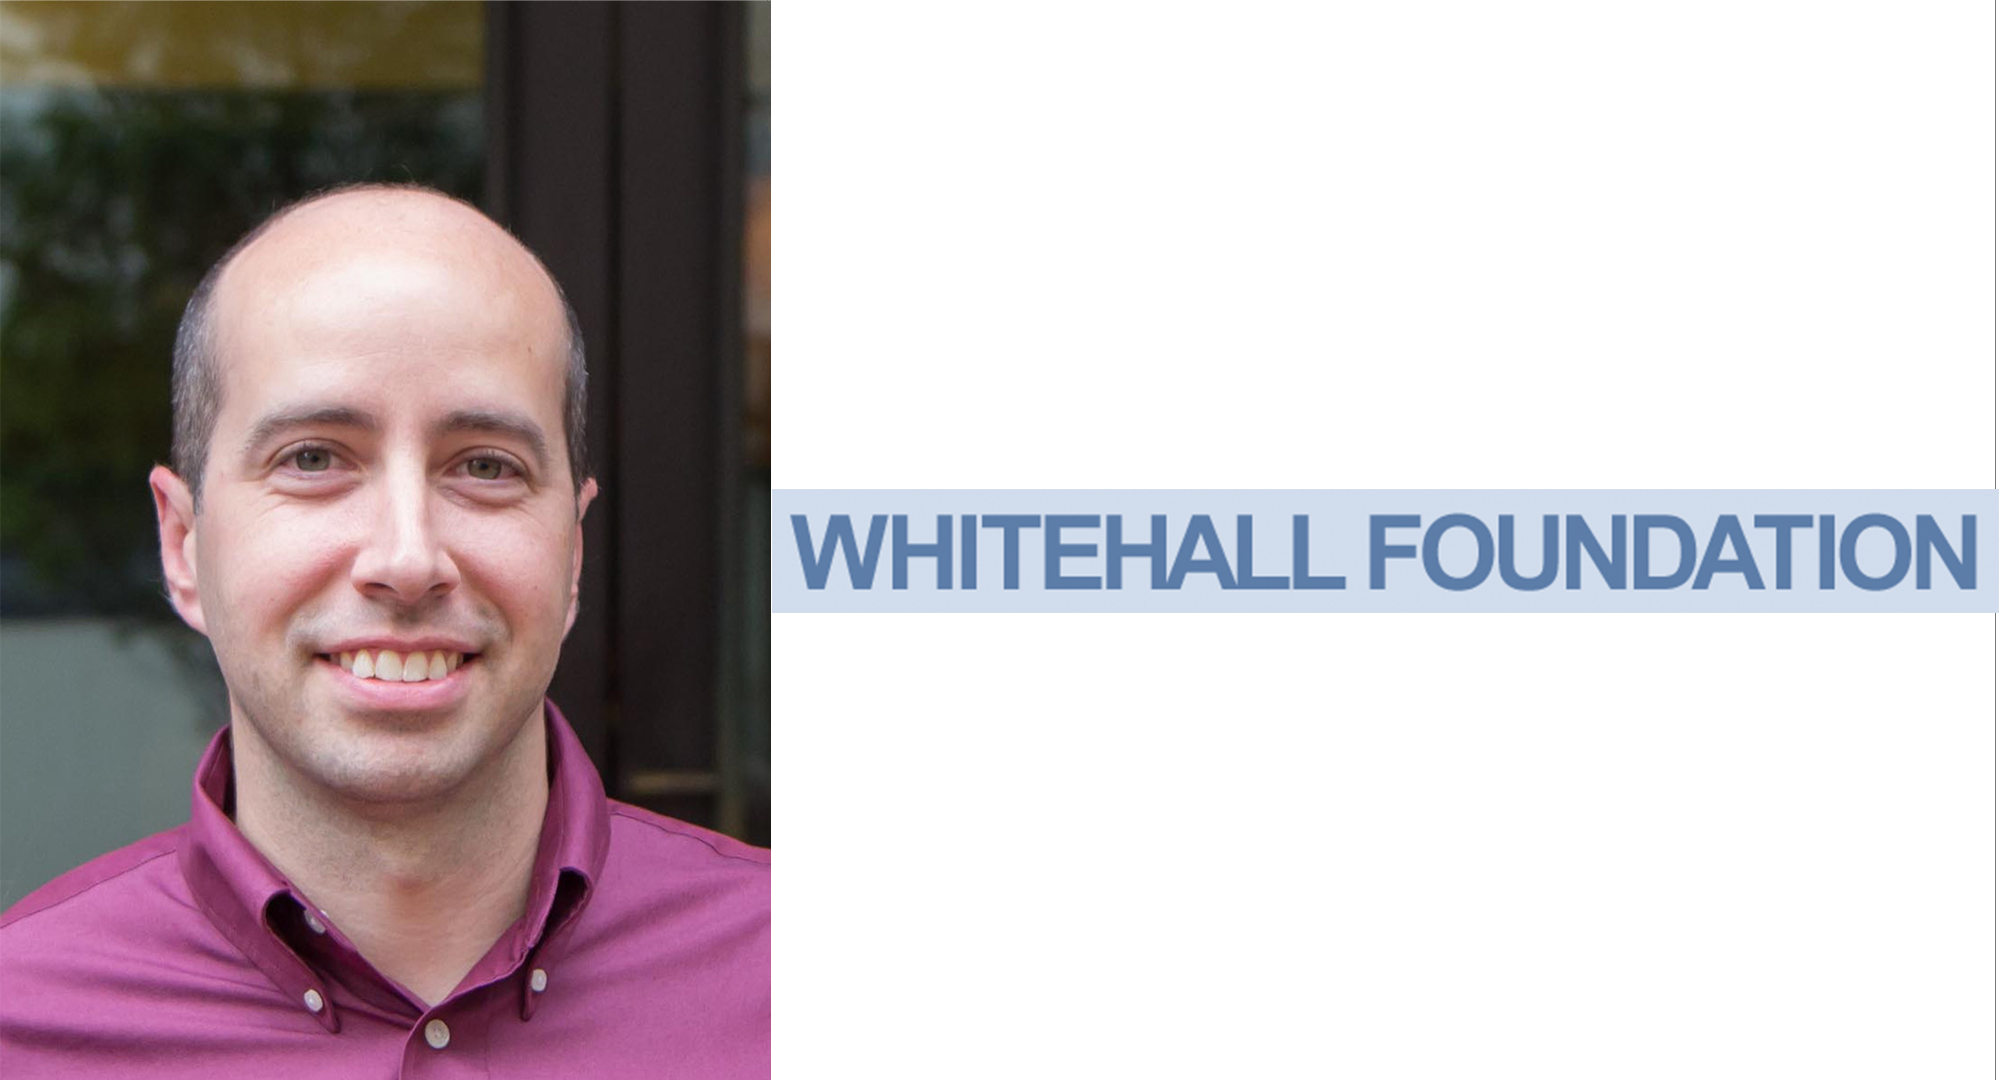 Kenneth Myers headshot and Whitehall Foundation logo